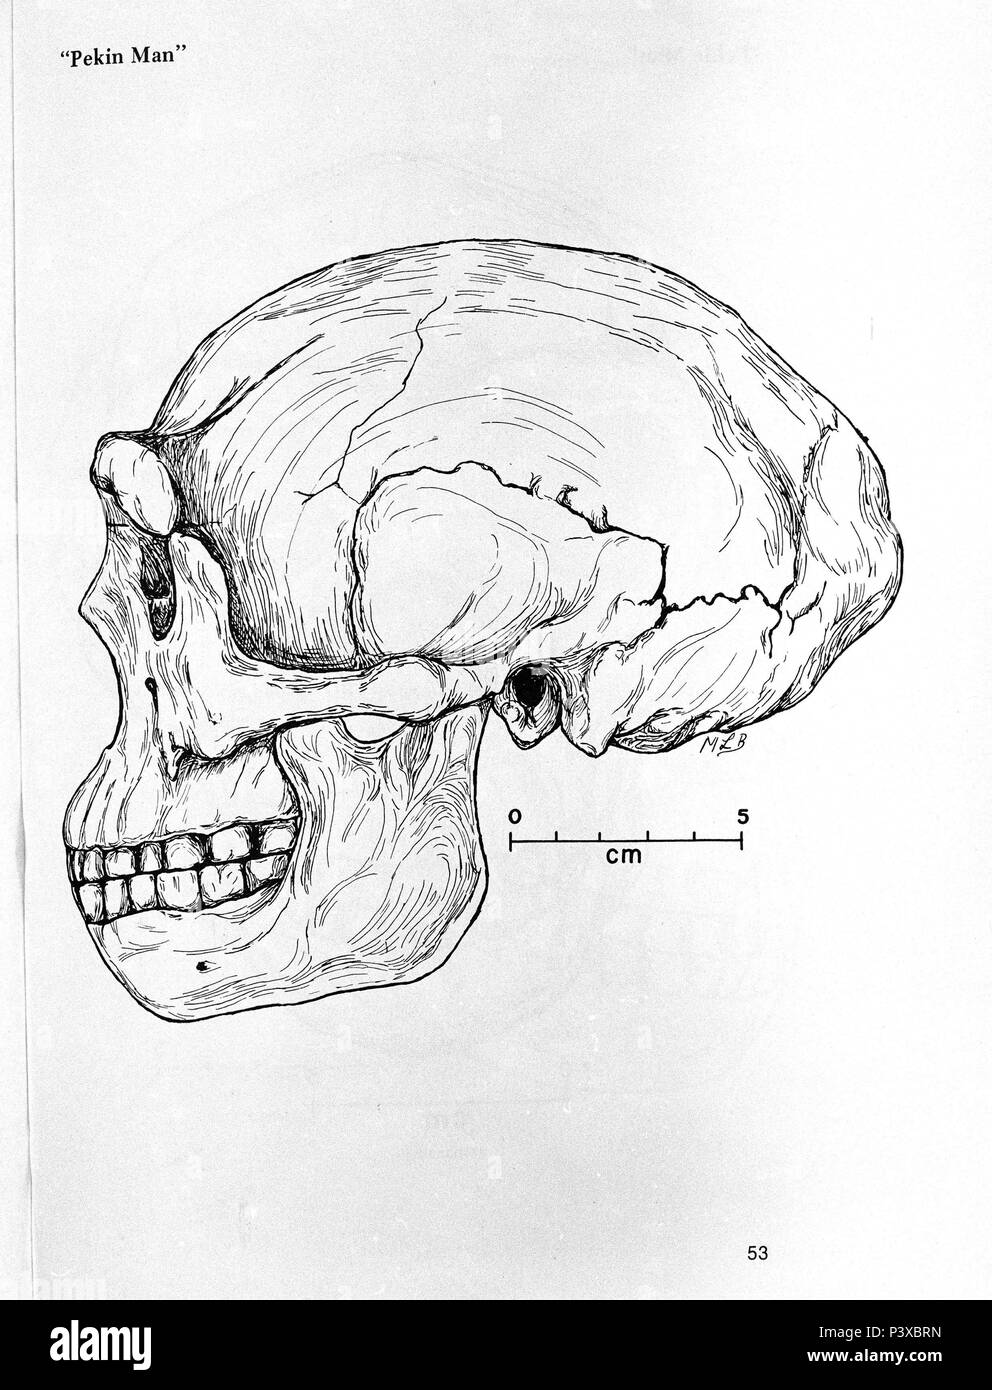 CRANEO DE HOMBRE DE PEKIN - Homo erectus - MEDIO PLEISTOCENO - 300.000 AÑOS. Lage: FACULTAD DE BIOLOGICAS, MADRID, SPANIEN. Stockfoto